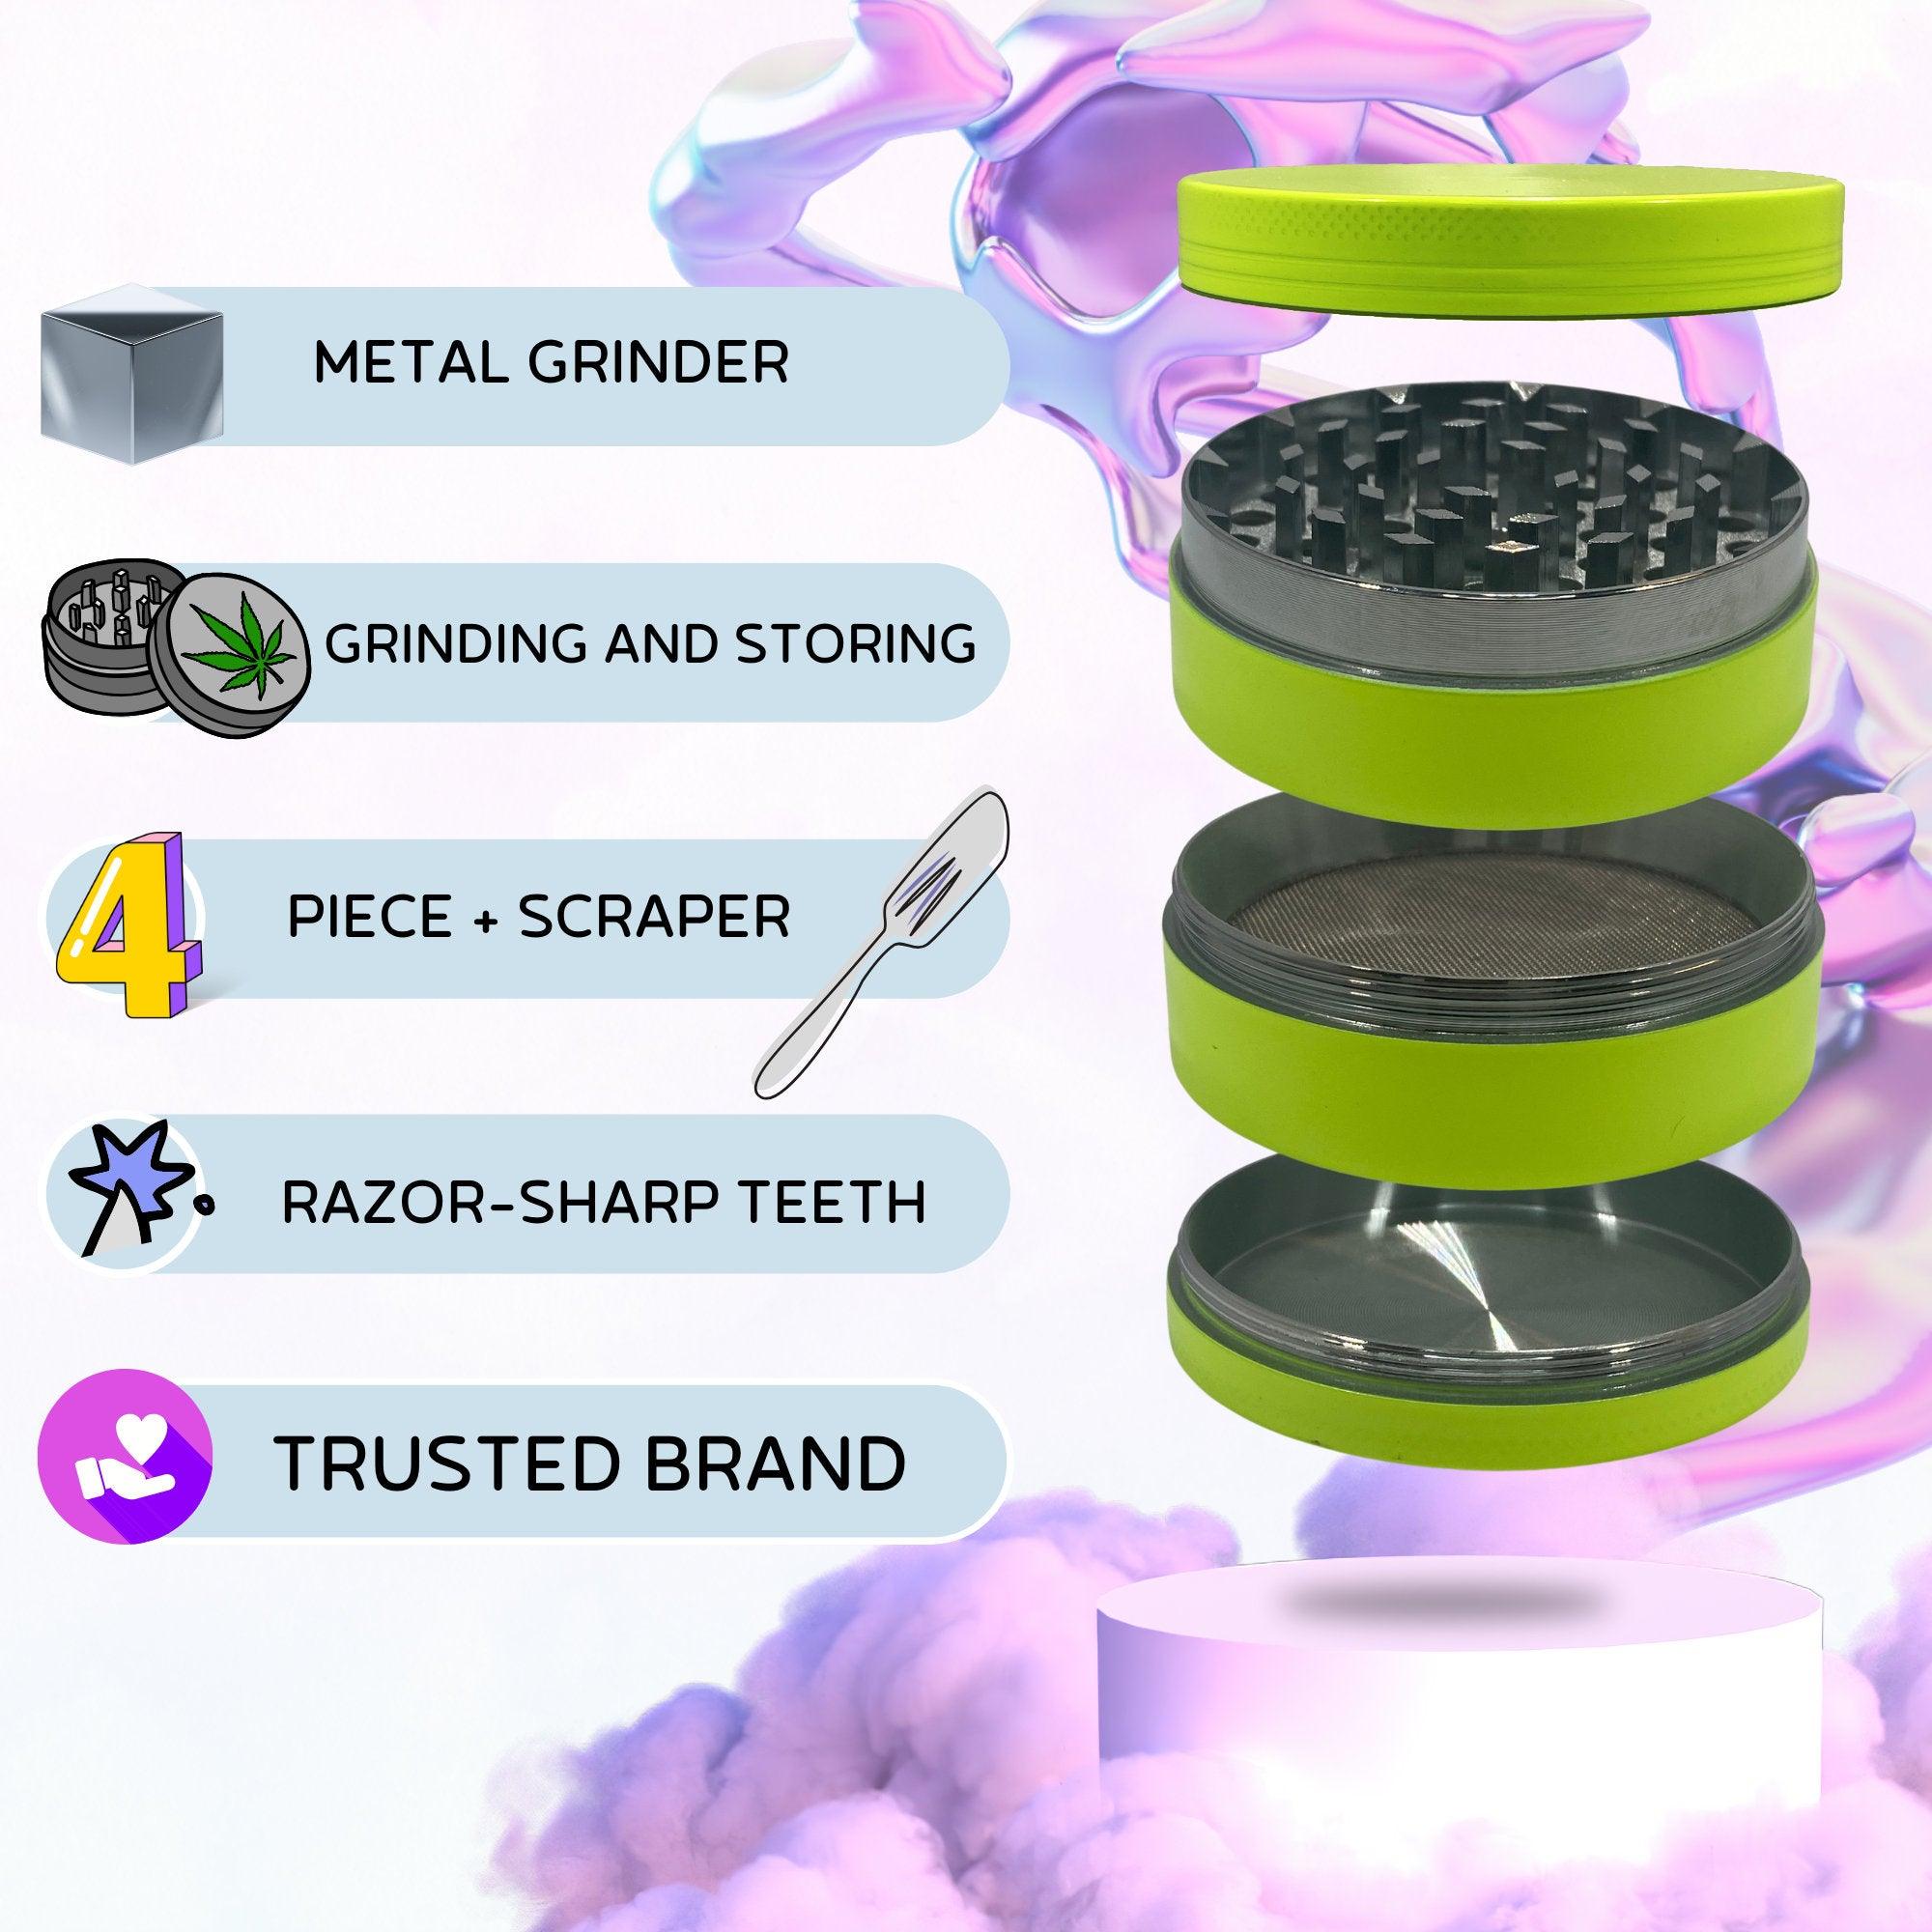 Metal Weed Grinder | Yellow grinder, fine cannabis grinder, Cool weed accessories, Big Herb grinder, Green grinder, 4 pieces grinders, girly